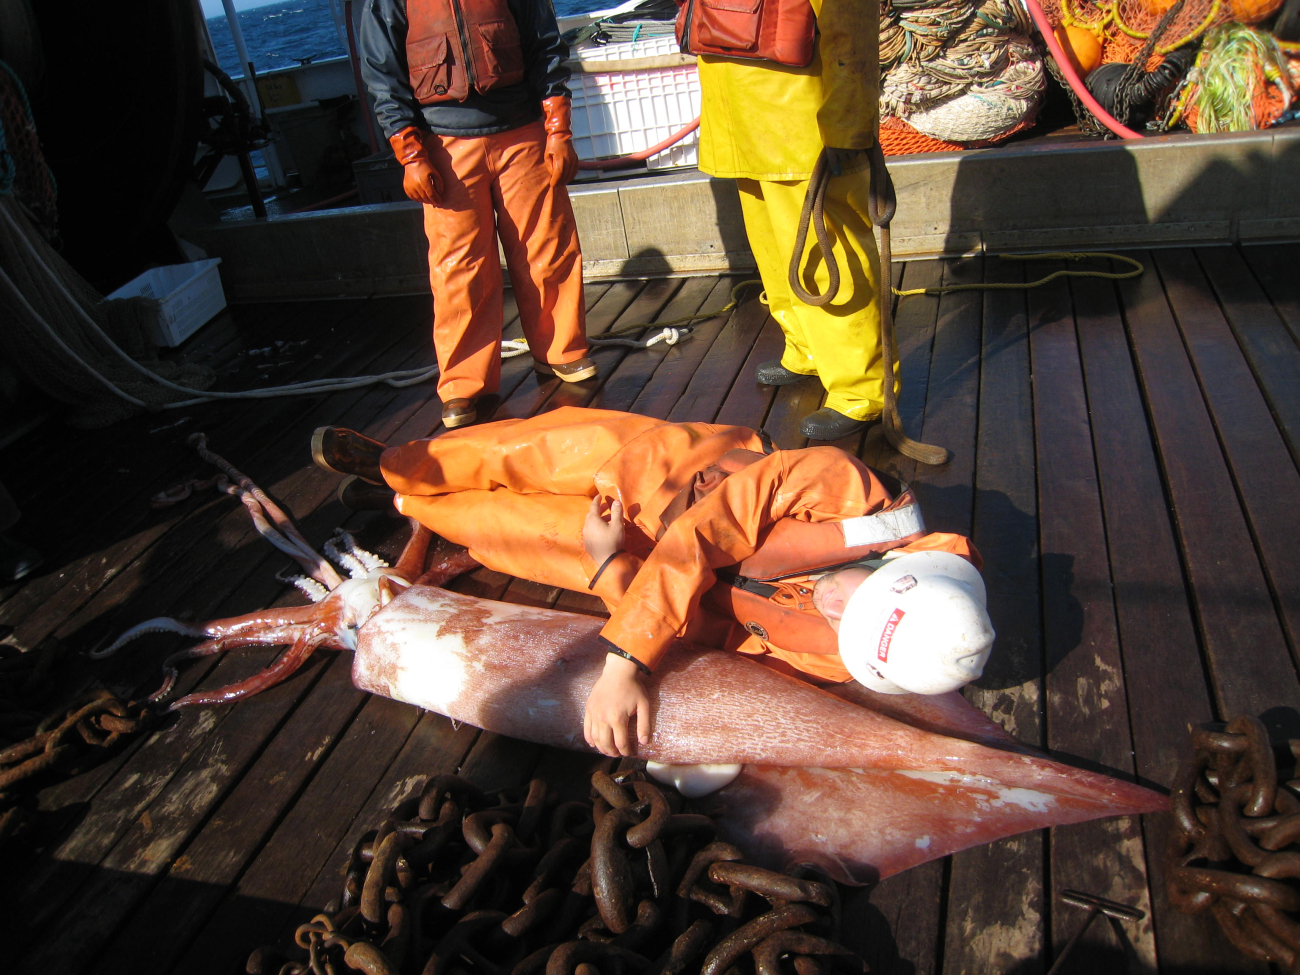 Orange human lying next to orange squid for scale